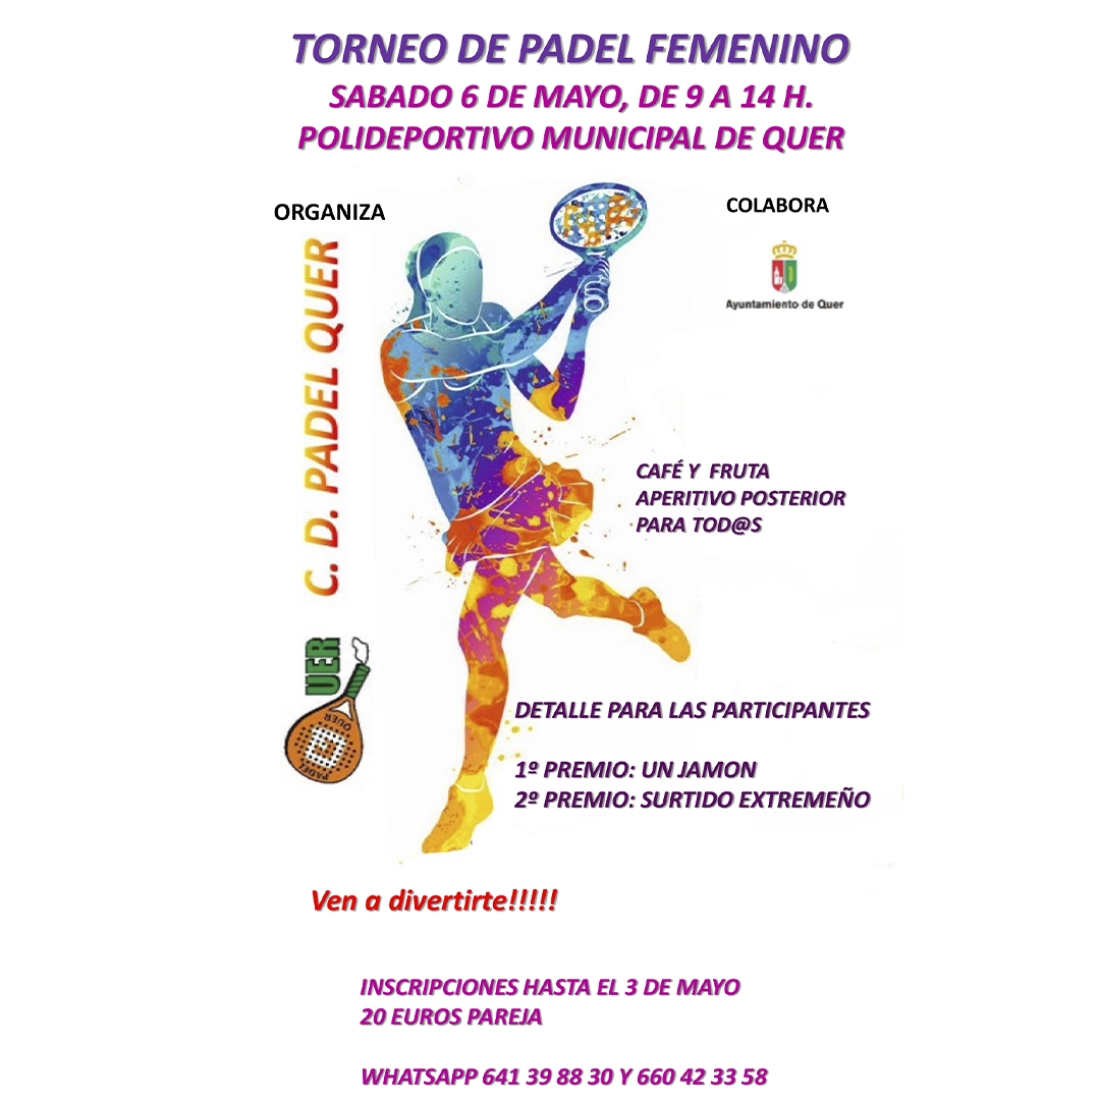 El sábado, 6 de mayo, torneo de pádel femenino de Quer